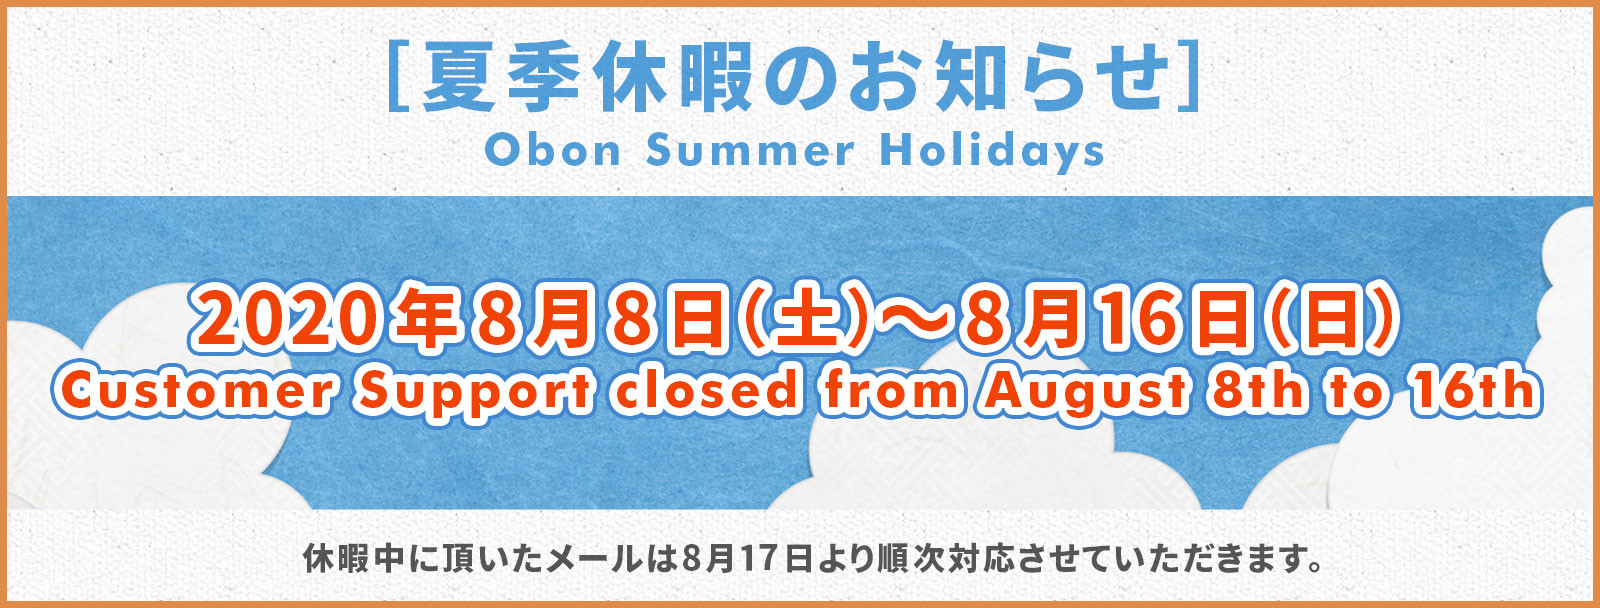 2020 Obon Summer Holidays